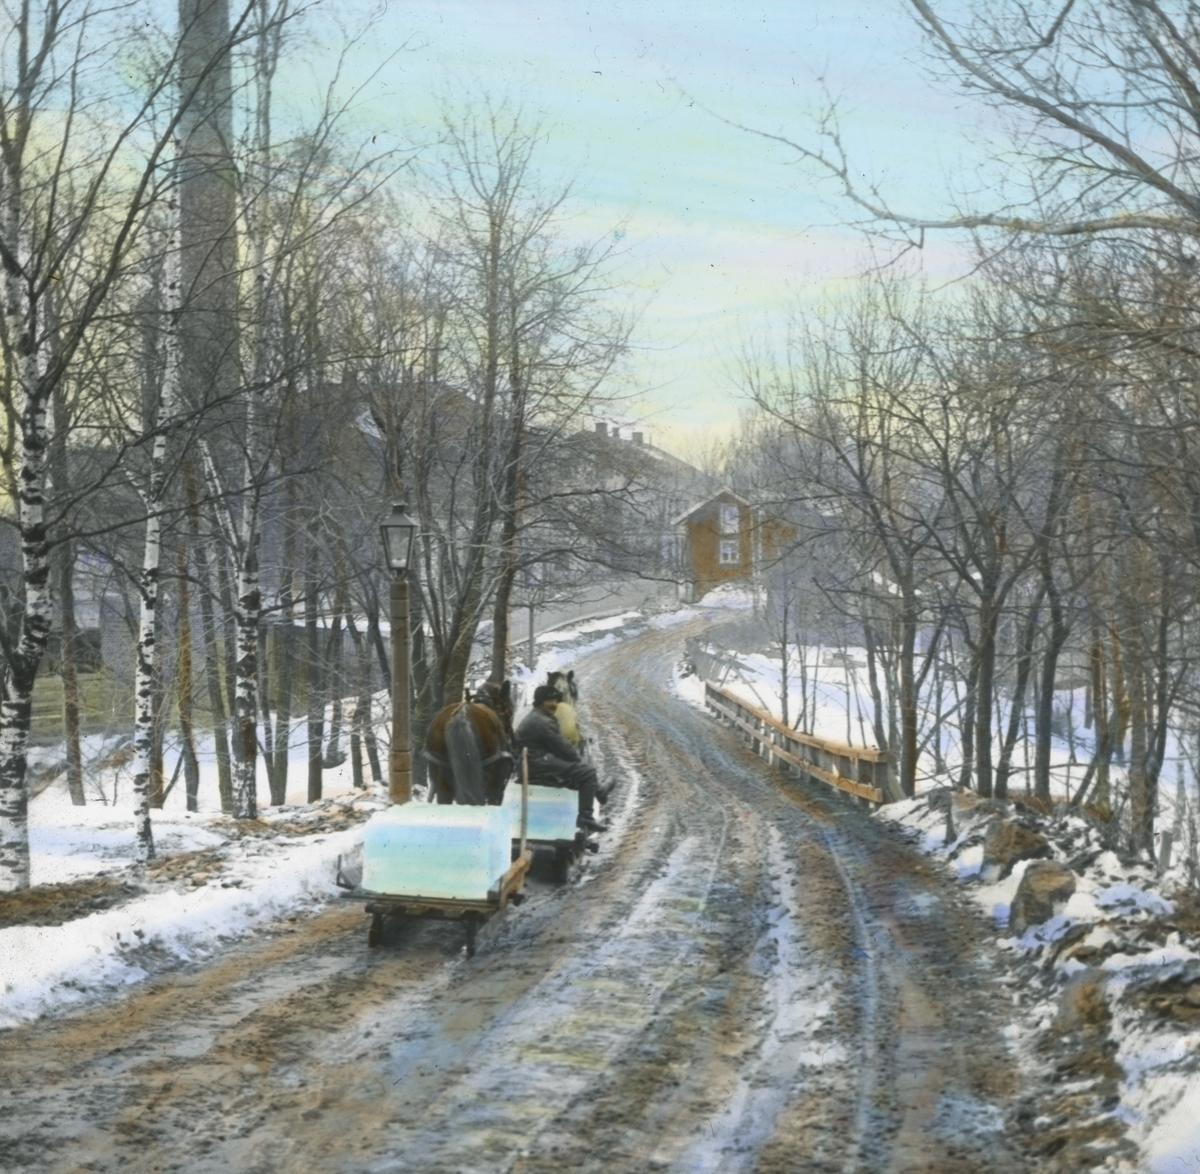 Håndkolorert dias. Kjøring av is langs Sørkedalsveien i 1902. I front en kjørekar med hest og slede lastet med isblokker, en hest og slede til med is. Bak trær skimtes en høy pipe, og i bakgrunnen ligger flere hus.